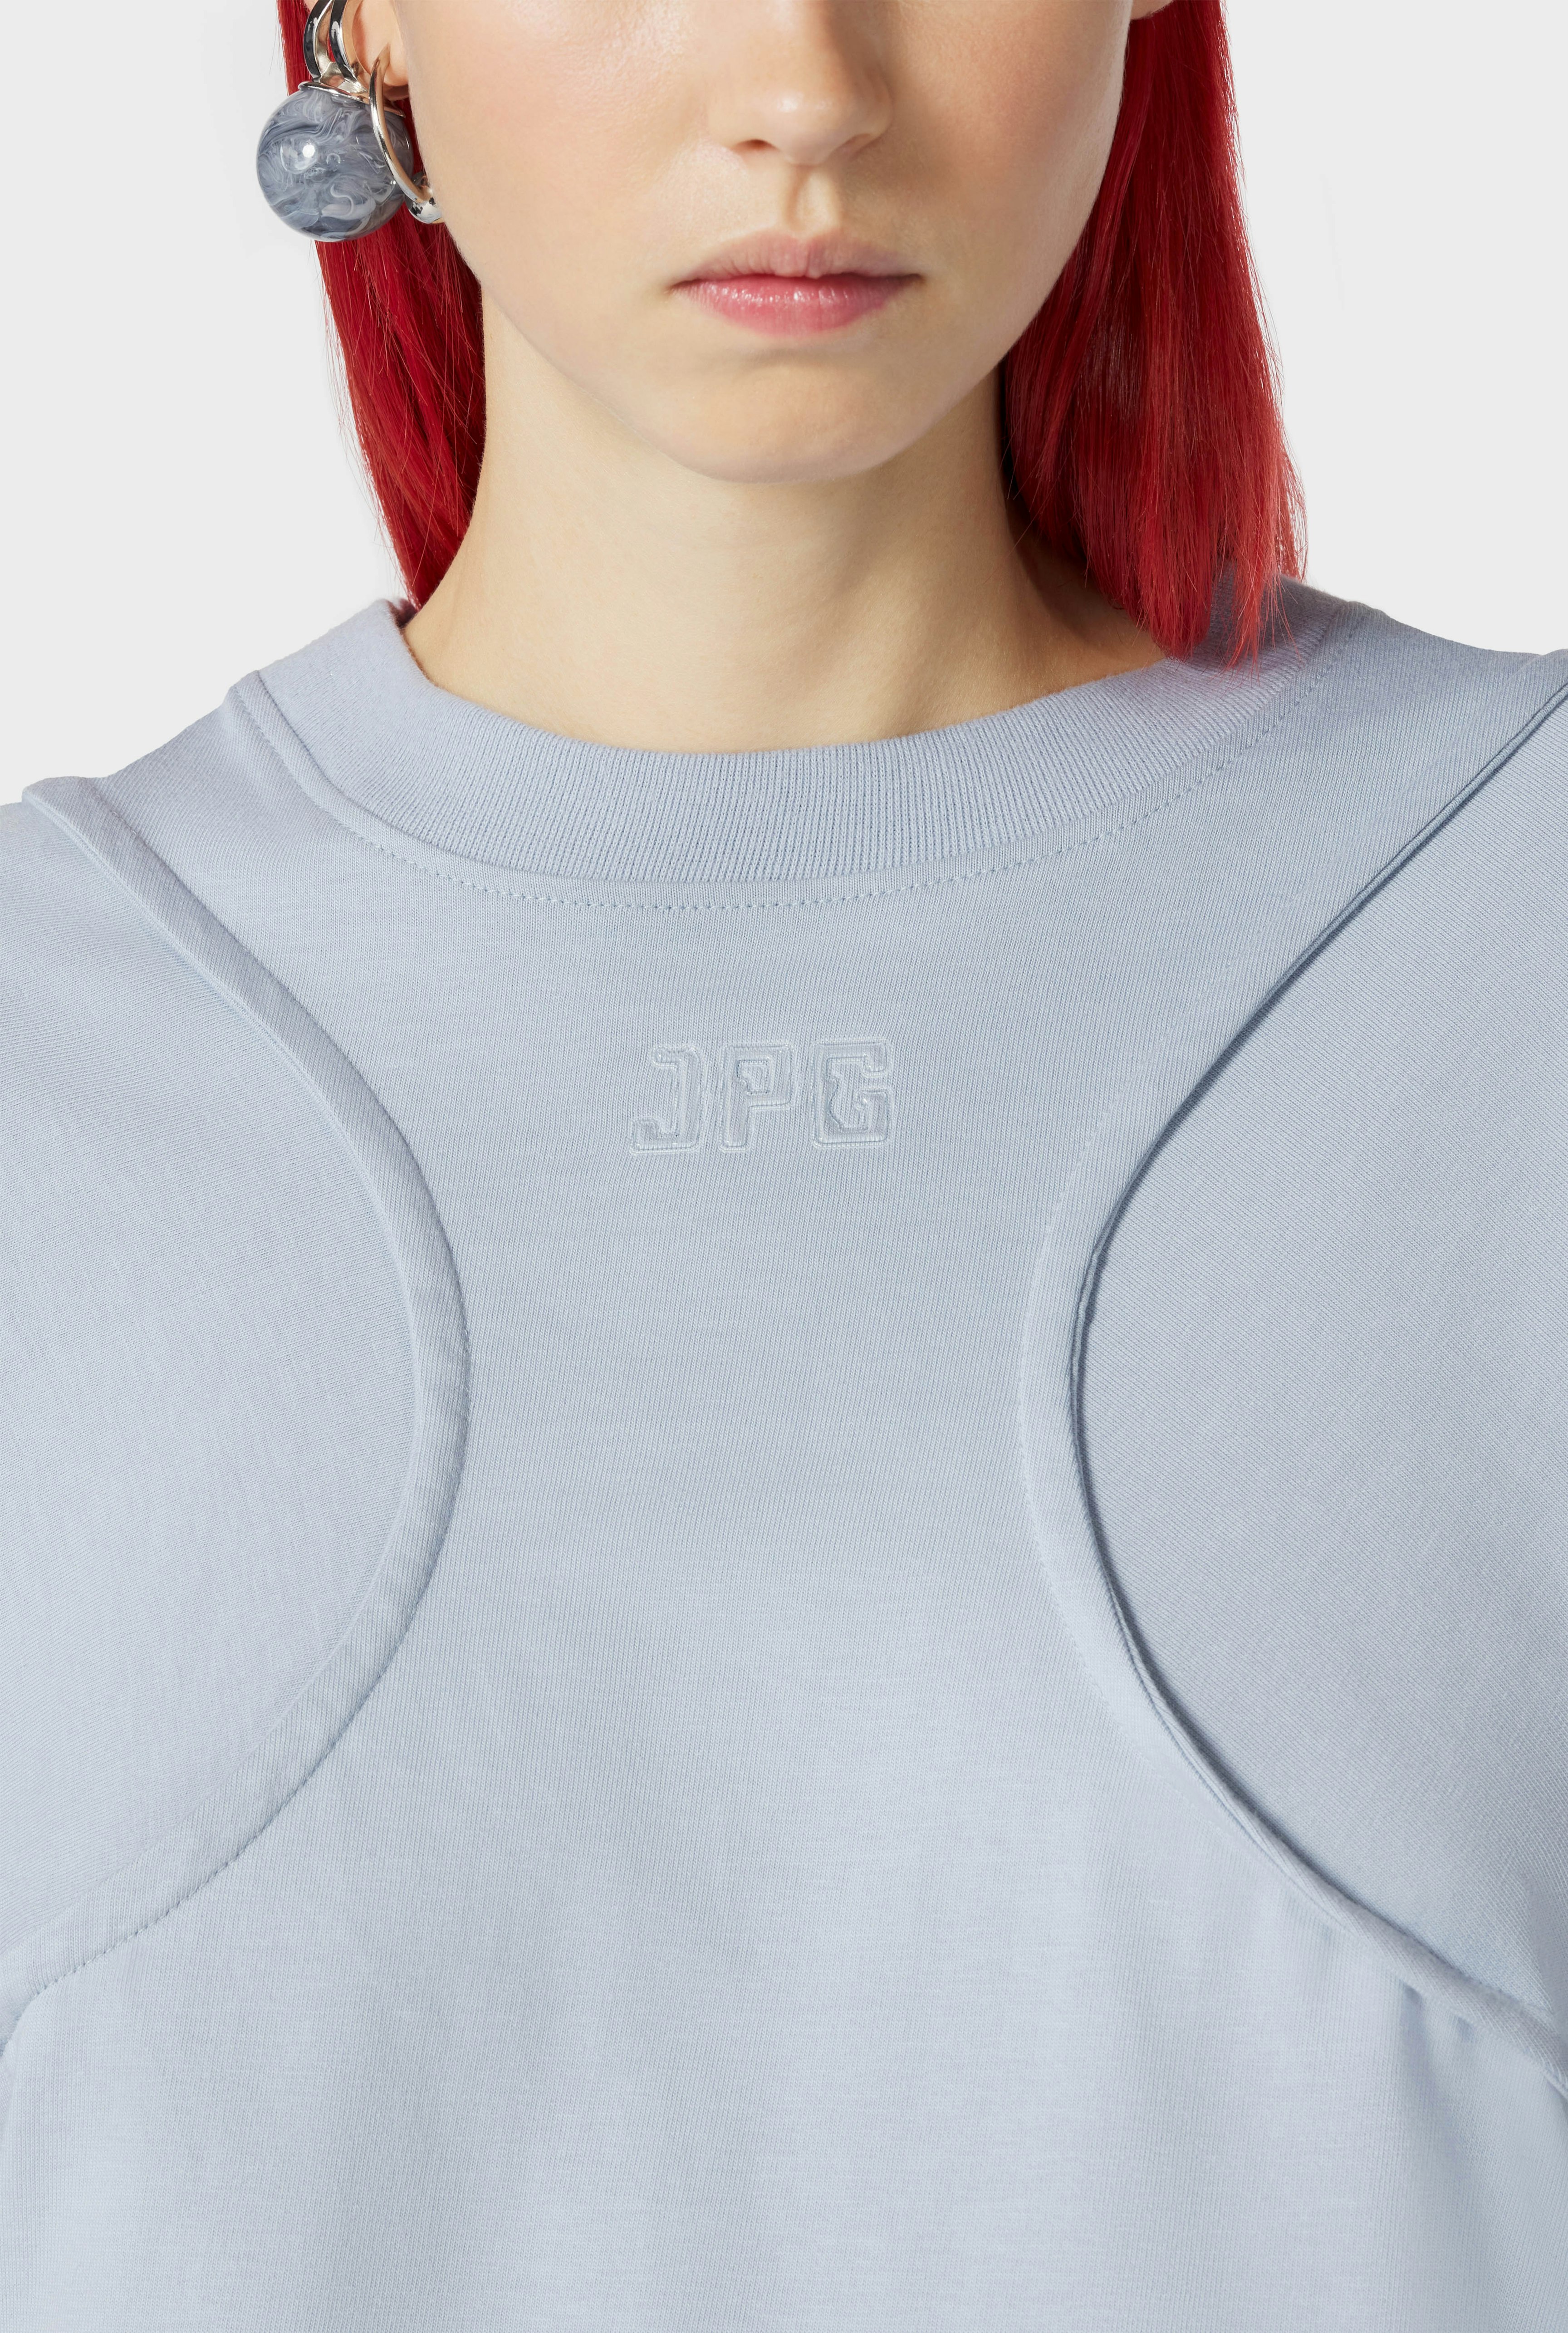 Le T-shirt JPG Bleu Jean Paul Gaultier